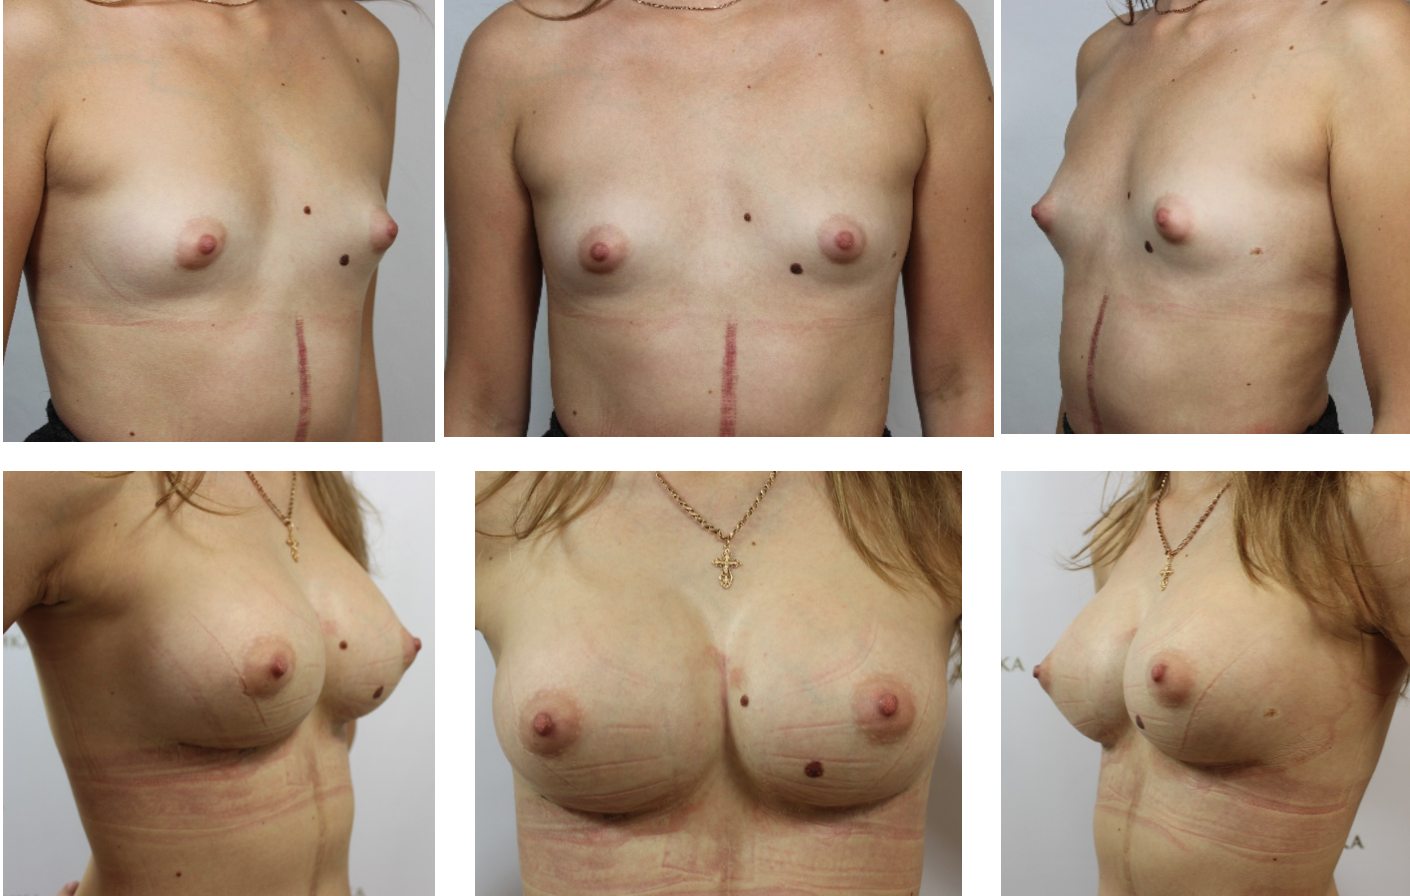 размеры груди и сосков у женщин фото 18